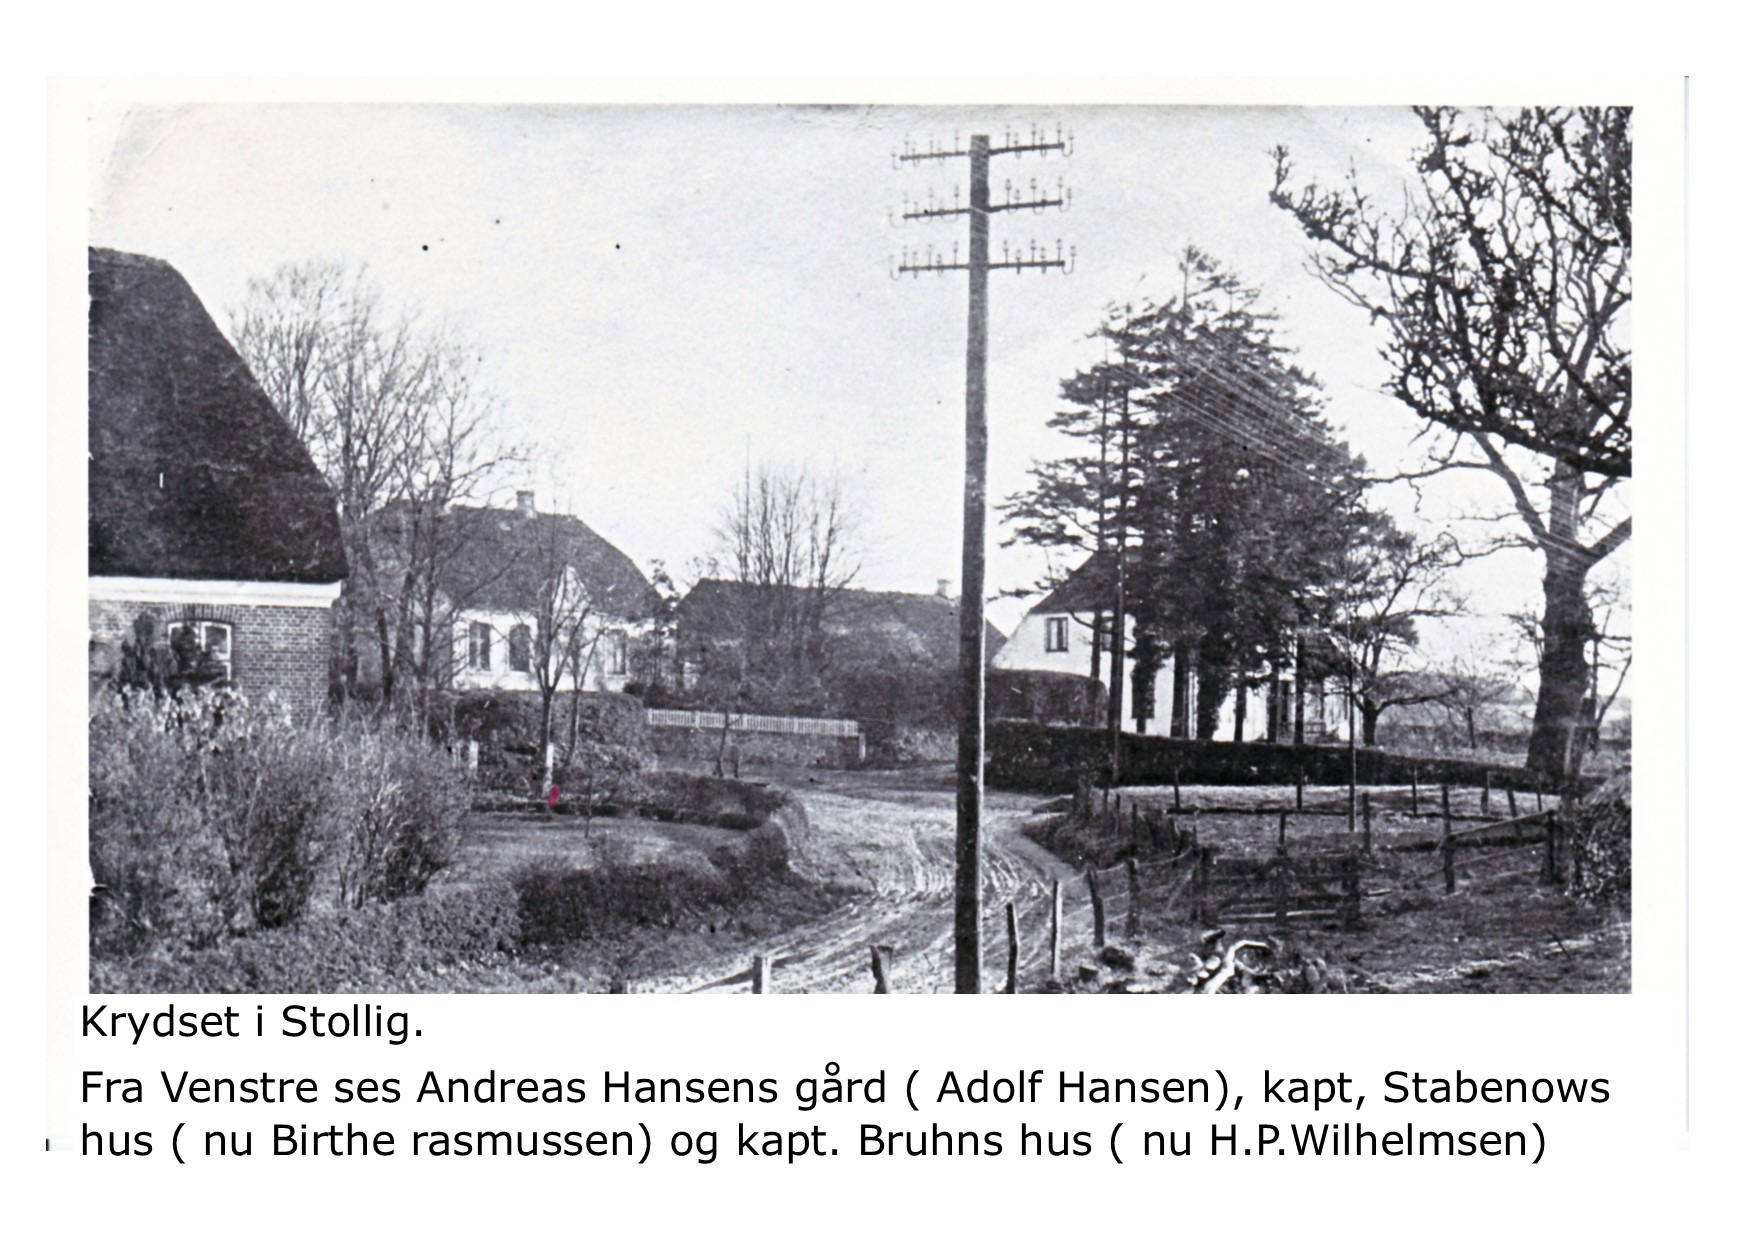 Krydset i Stollig 